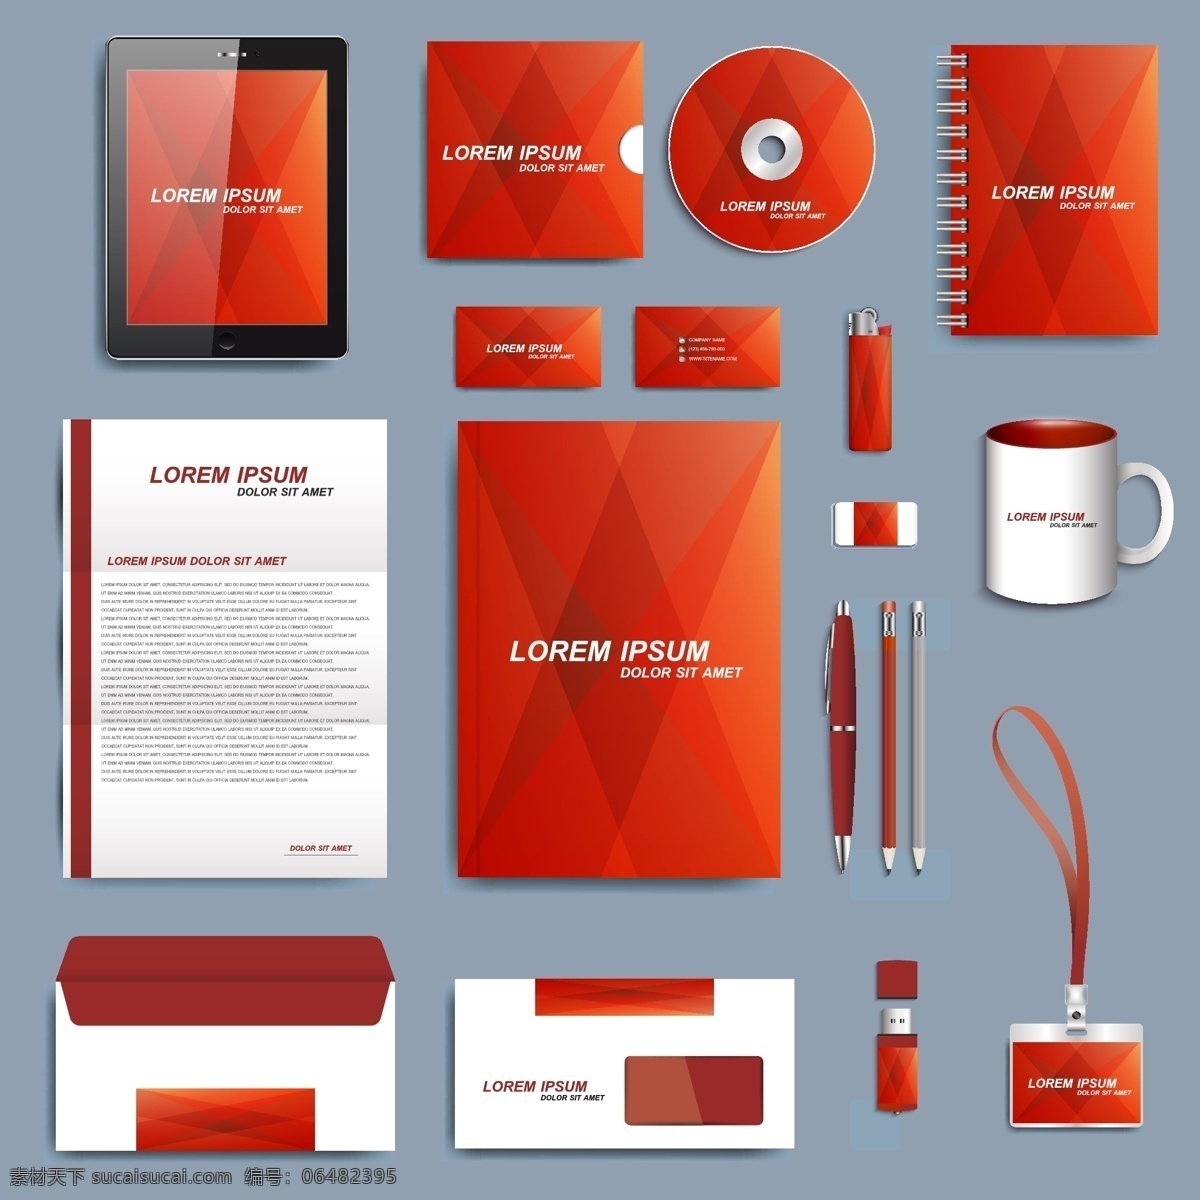 红色 大气 包装 矢量 矢量素材 设计素材 背景素材